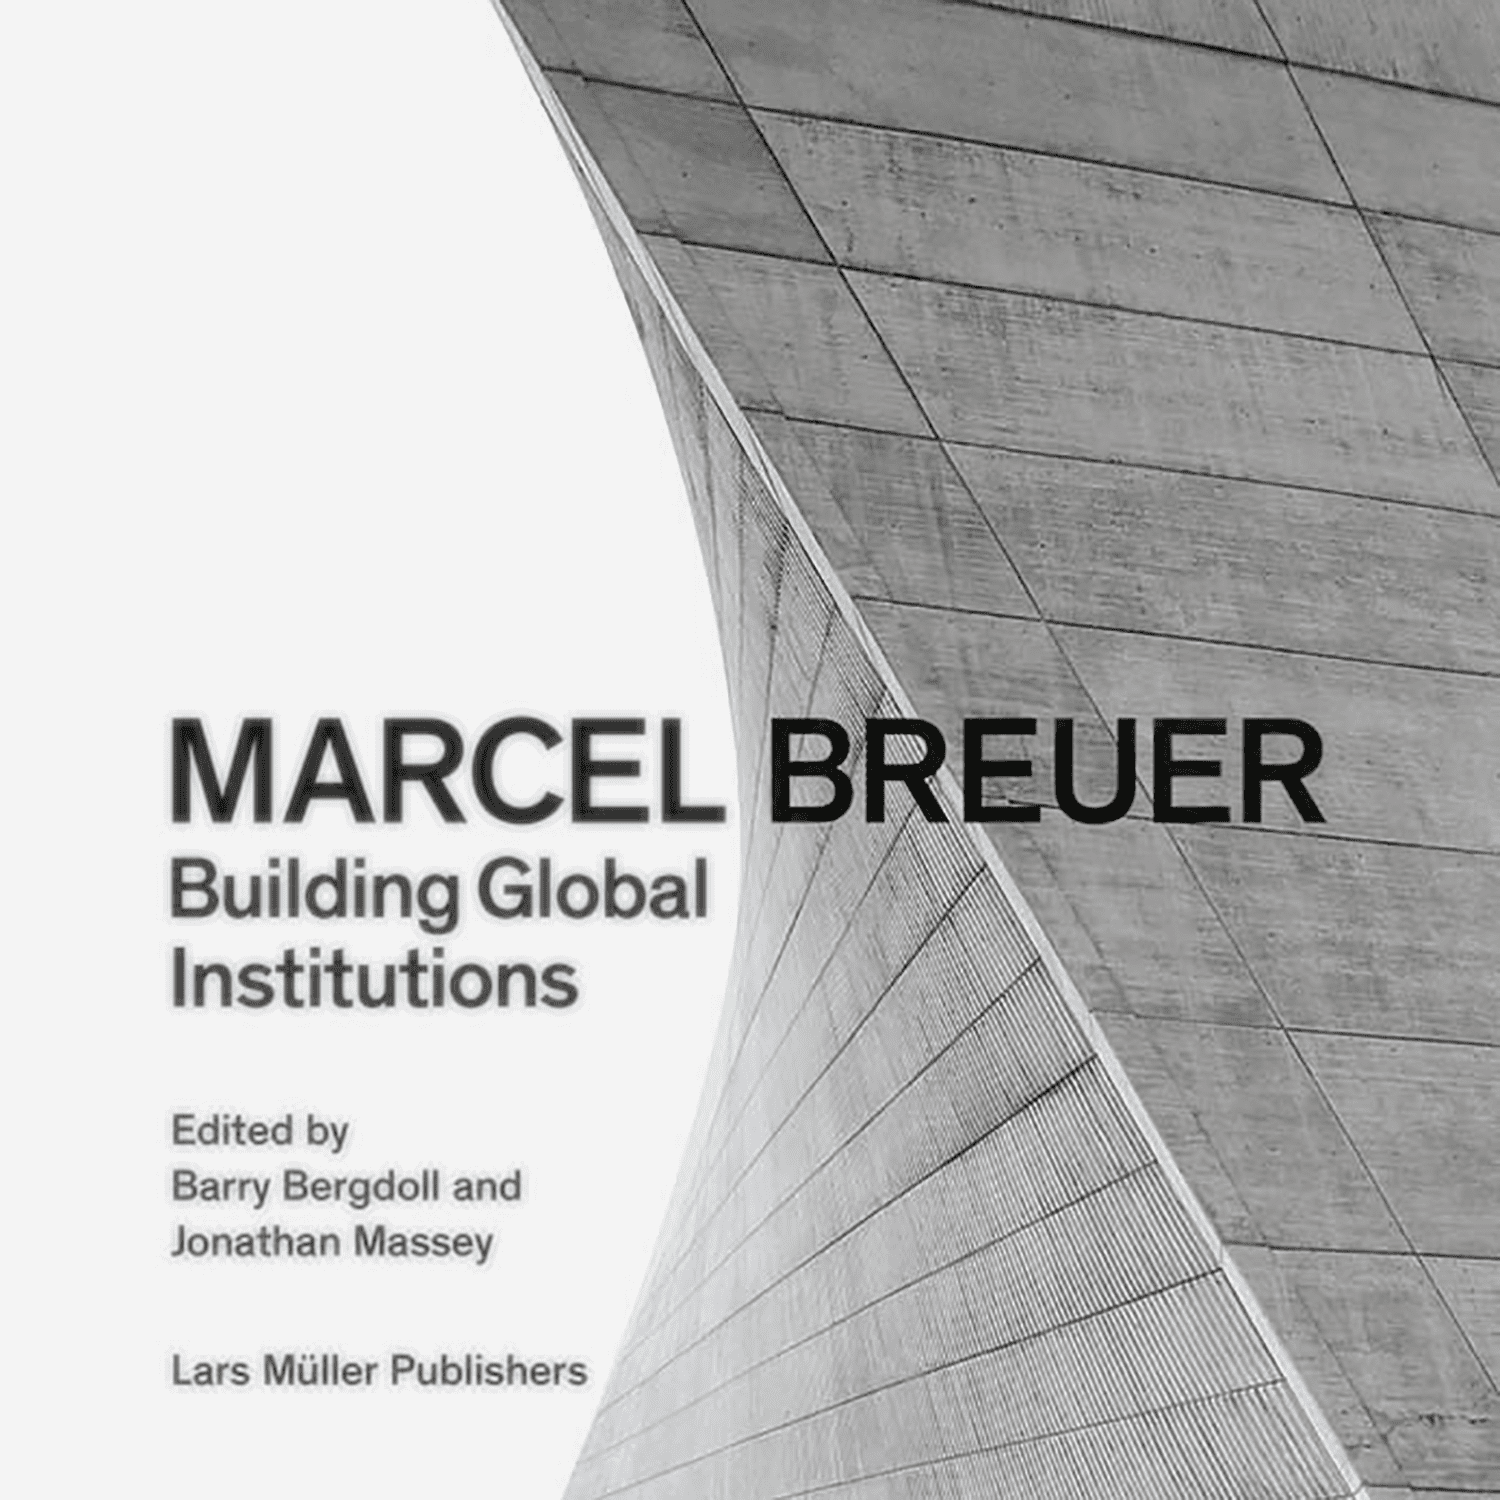 صورة مارسيل بروير - بناء المؤسسات العالمية
